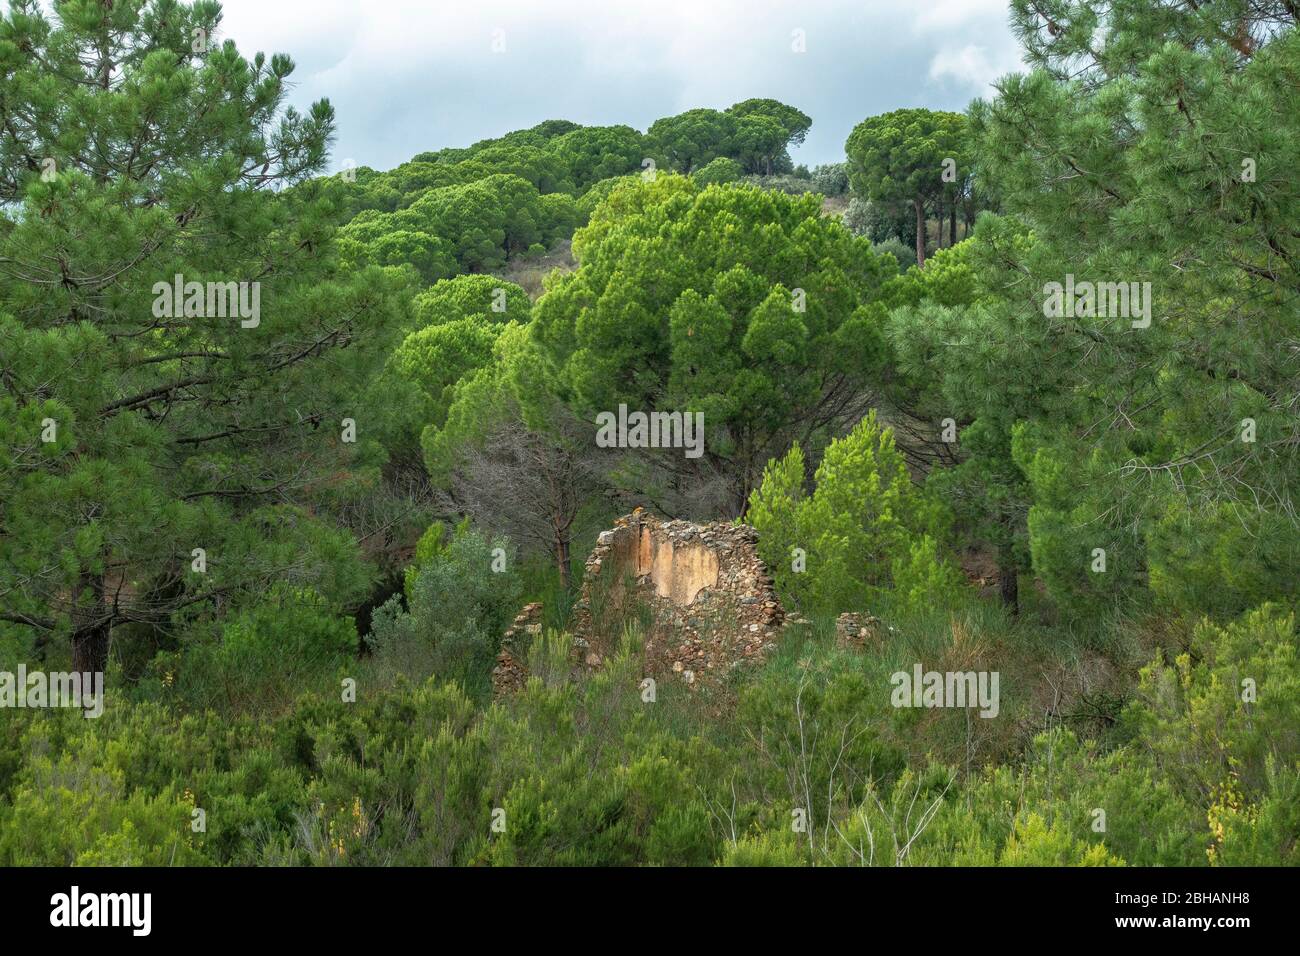 Europa, España, Cataluña, Costa Brava, Portbou, Ruina antigua en el camino del Camí de Ronda justo antes de Colera Foto de stock